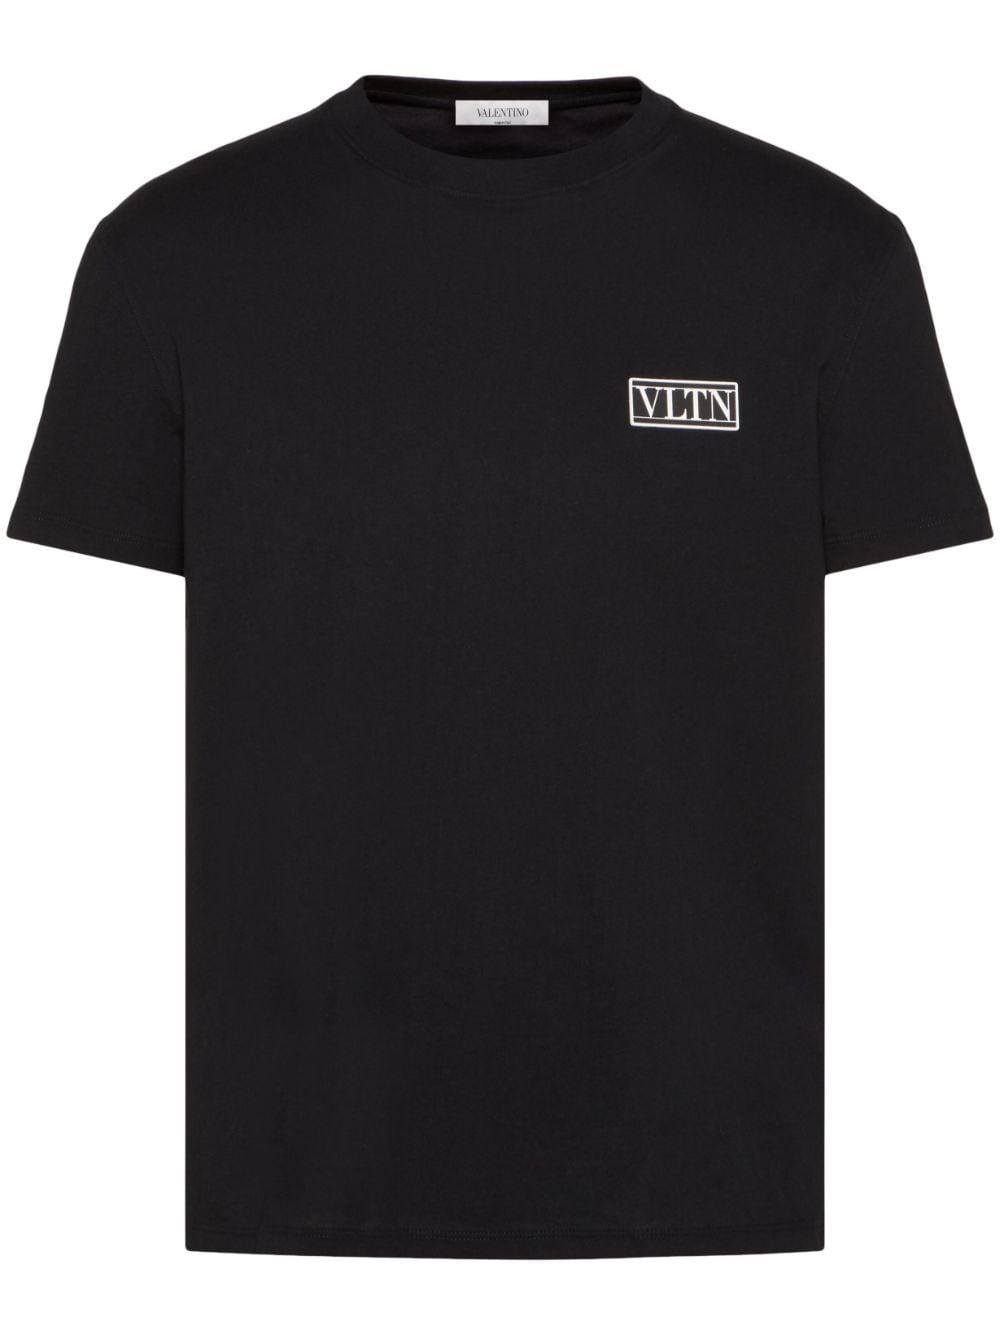 tシャツヴァレンティノVALENTINO / VLTN スター Tシャツ 黒 XL ロゴ